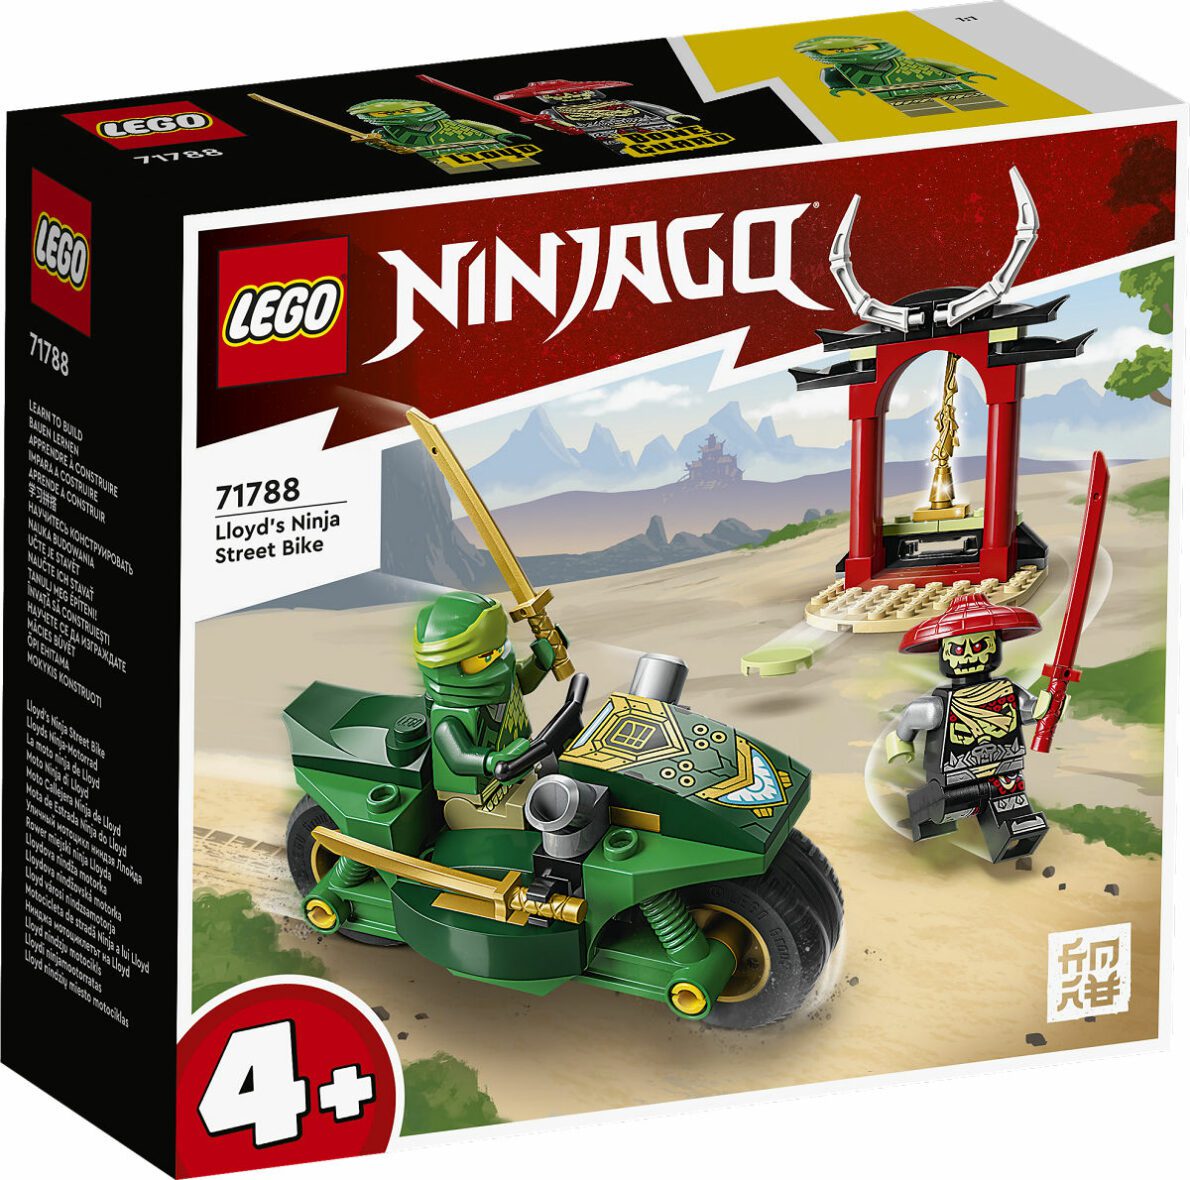 Ninja Go la moto ninja de lloyd – LEGO